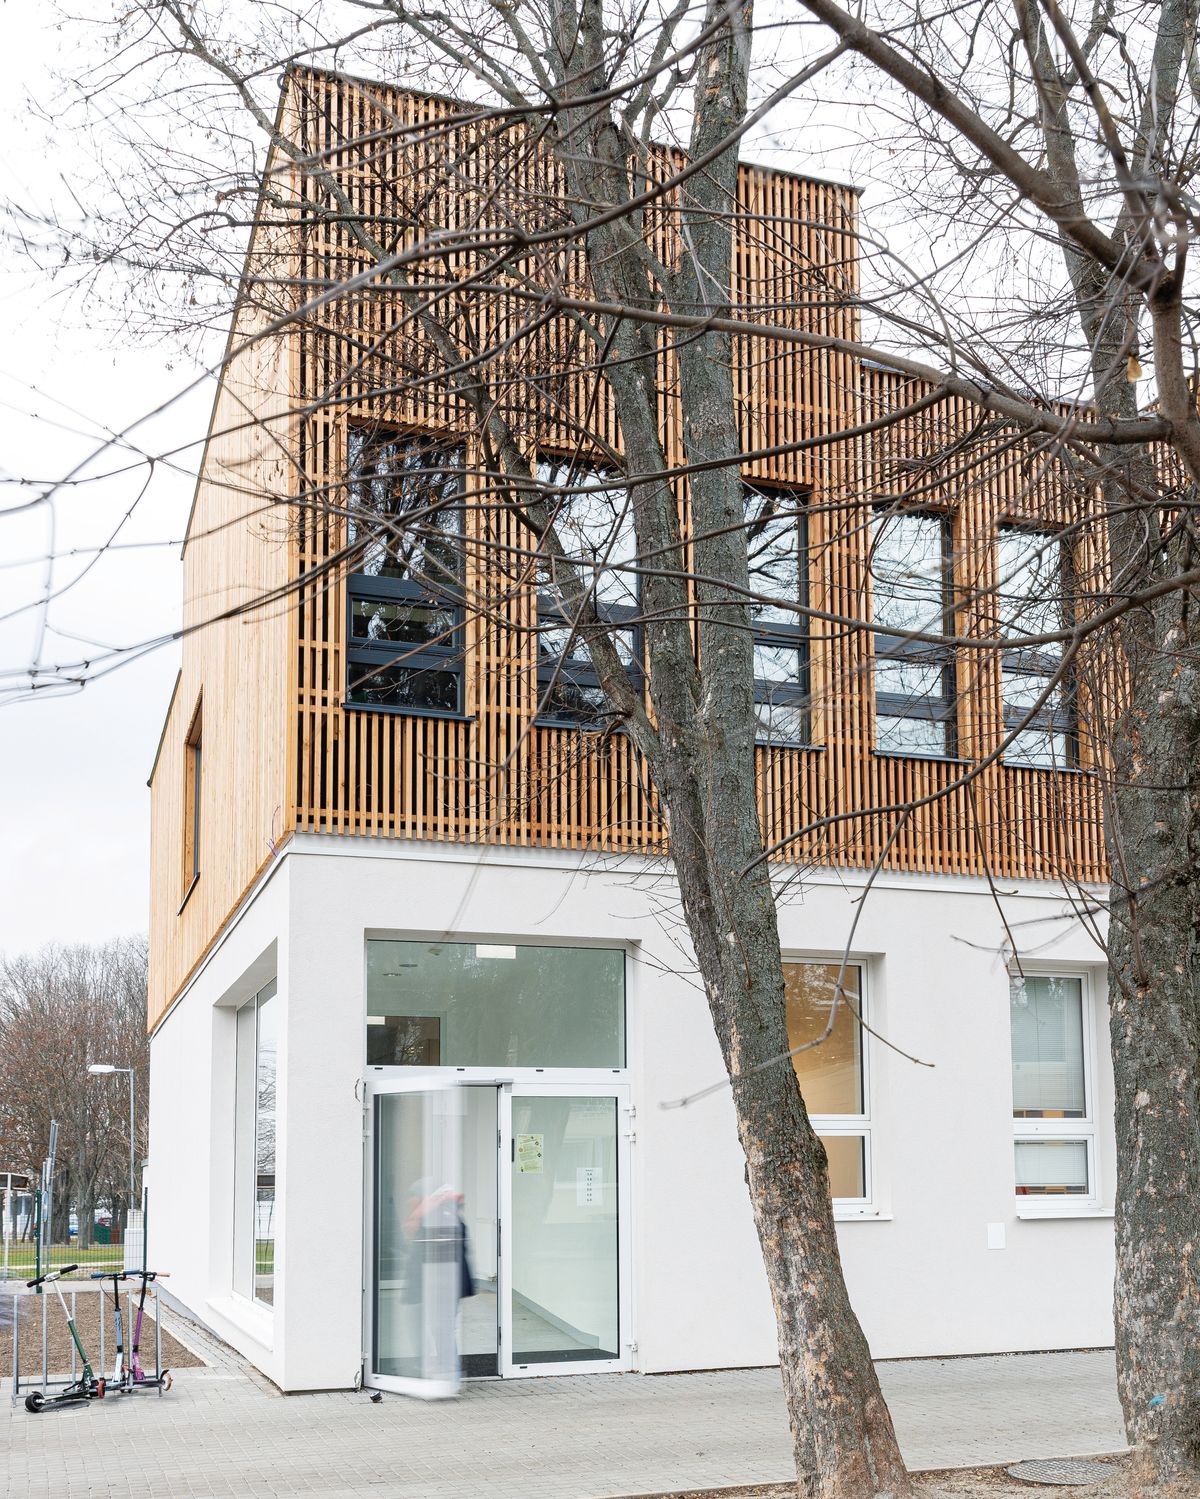 Rozšírenie základnej školy v Záhorskej Bystrici, ktorú navrhol architektonický ateliér PANTOGRAPH, bolo financované z výzvy na zvýšenie kapacít základných škôl Bratislavského kraja. Dokončené bolo v roku 2022.